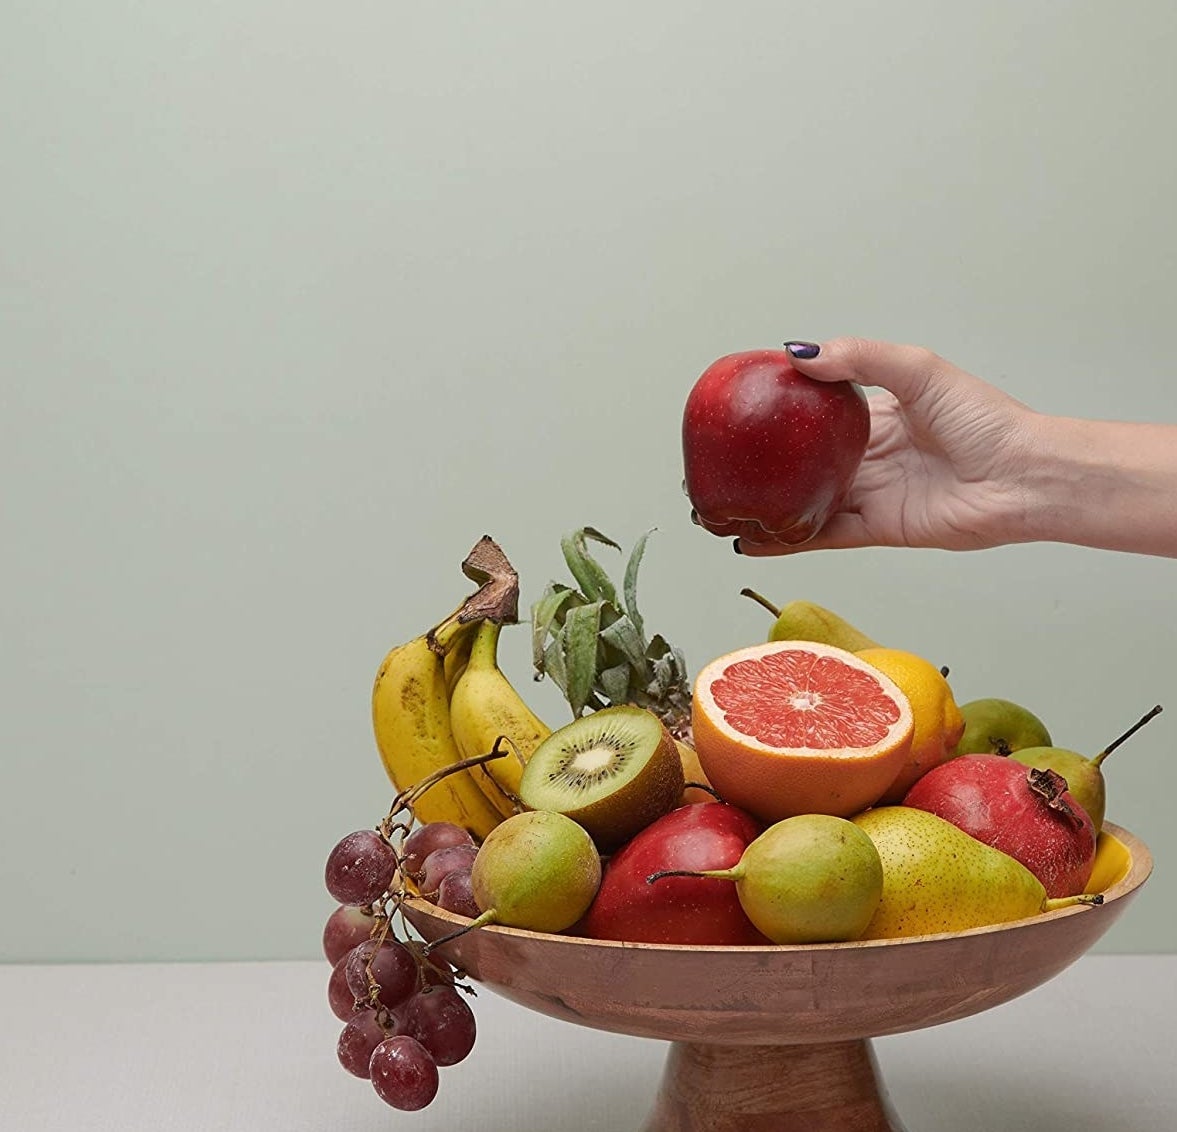 Fruit inside the bowl